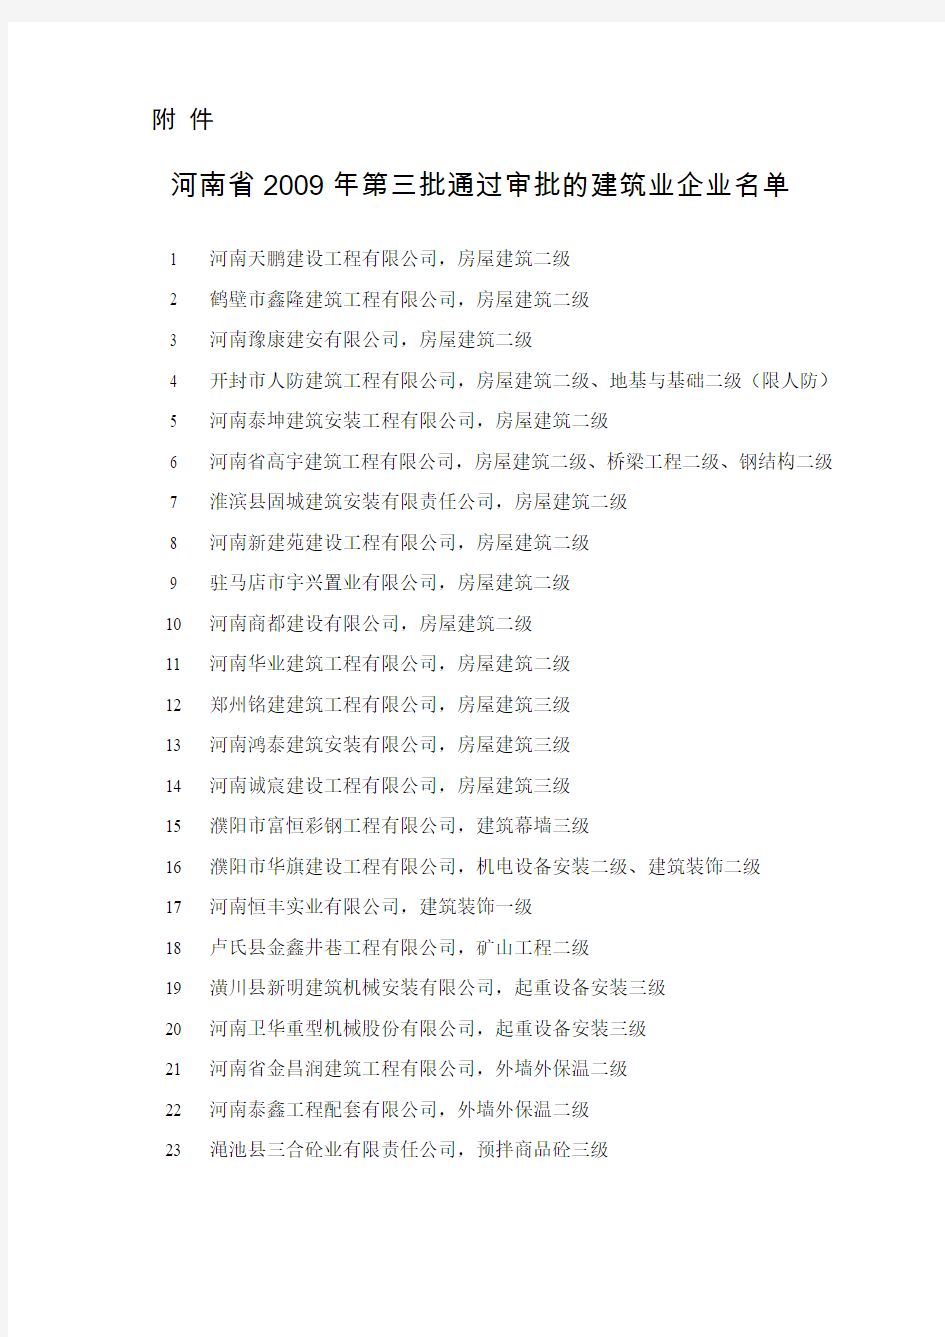 河南省2009年第三批通过审批的建筑业企业名单